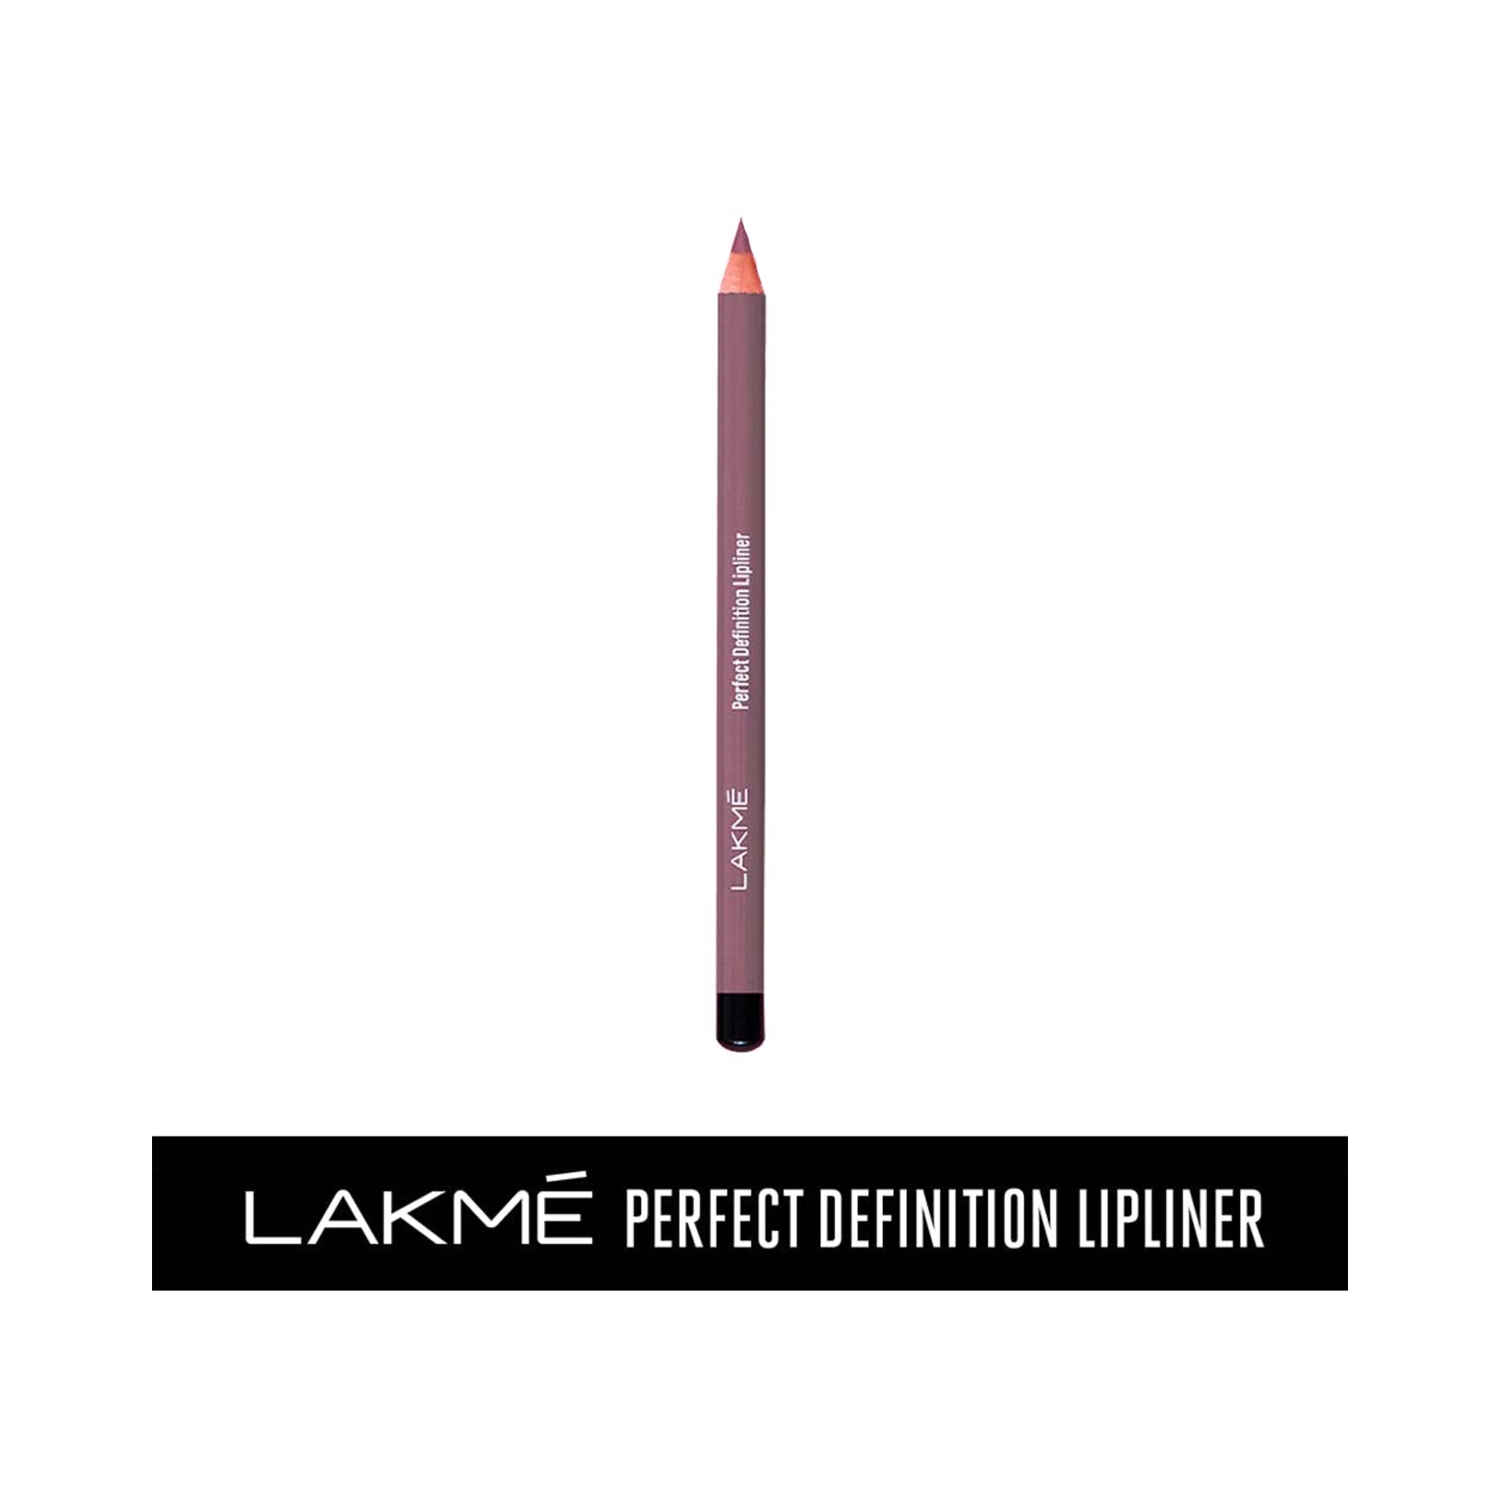 Lakme | Lakme Perfect Definition Lip Liner - Mauve Passion (0.78g)